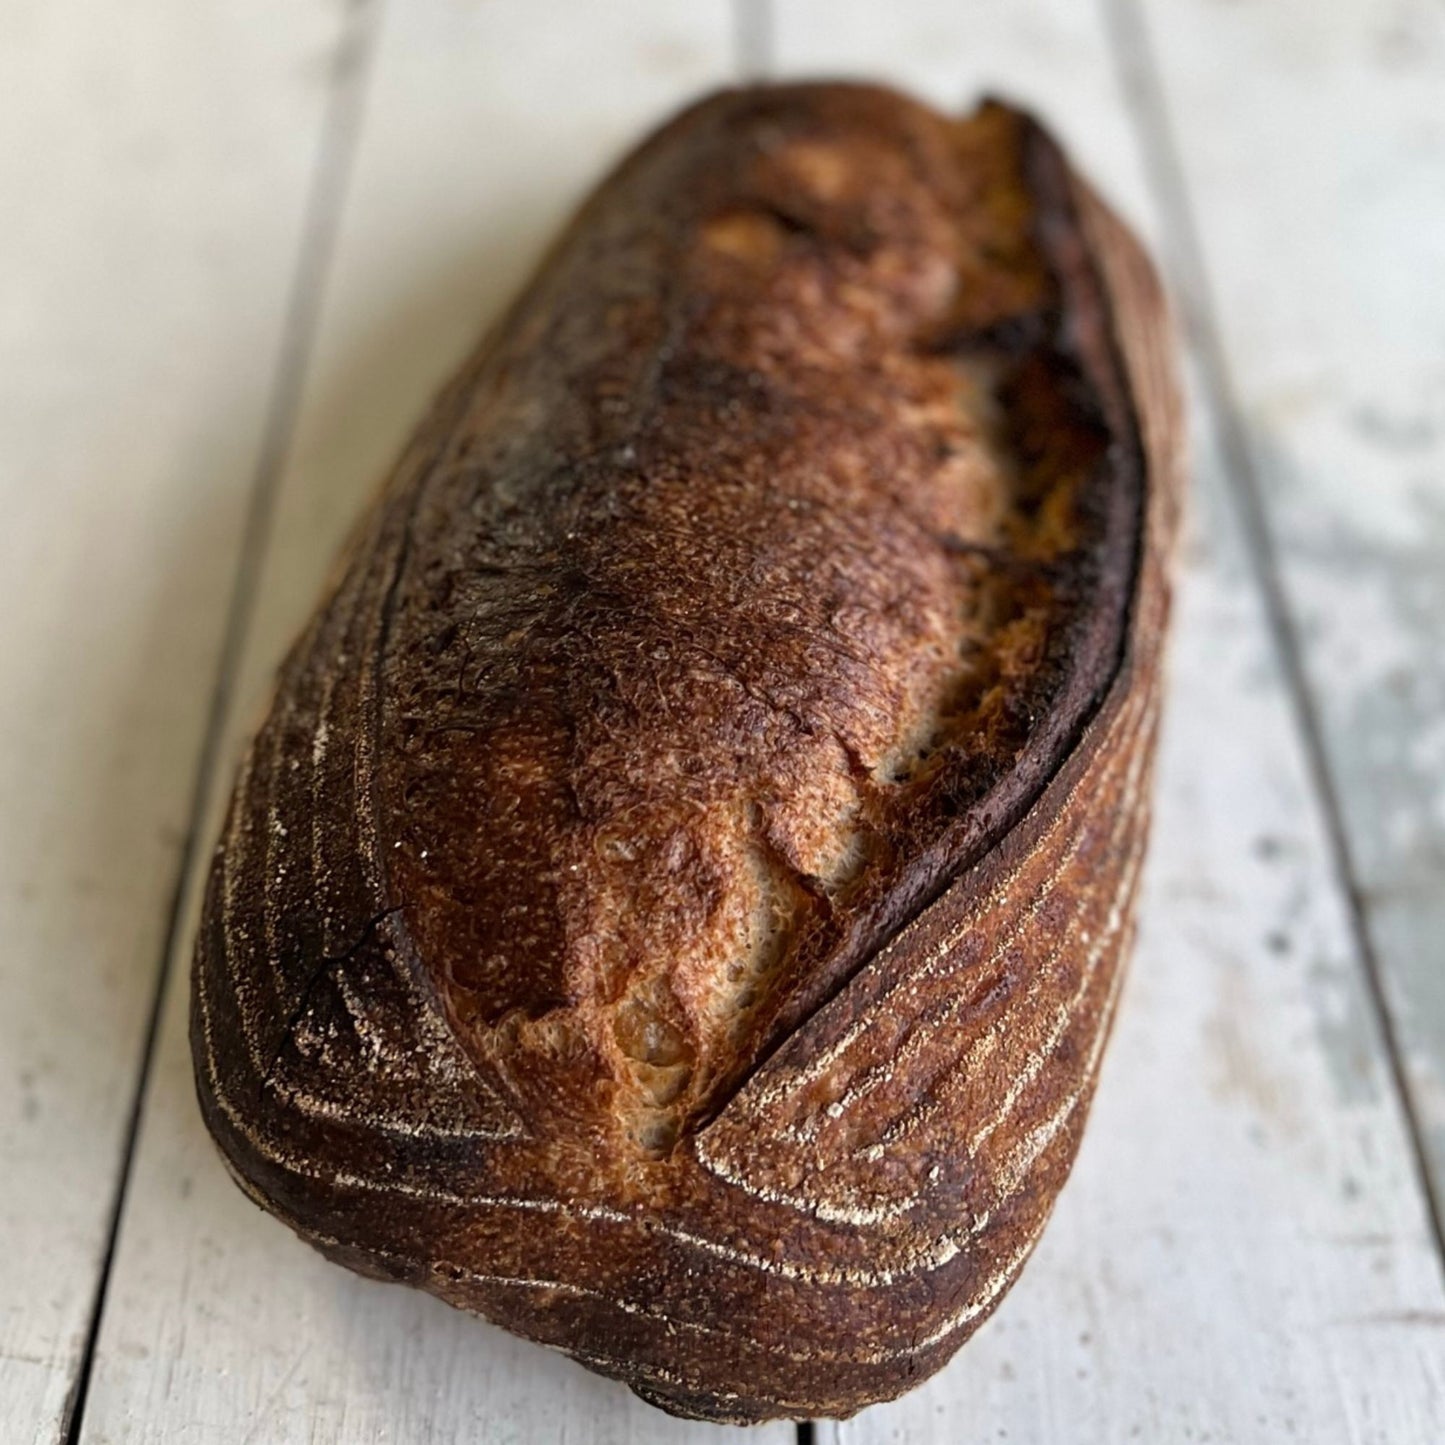 Bread - Cottesloe Sour White Loaf